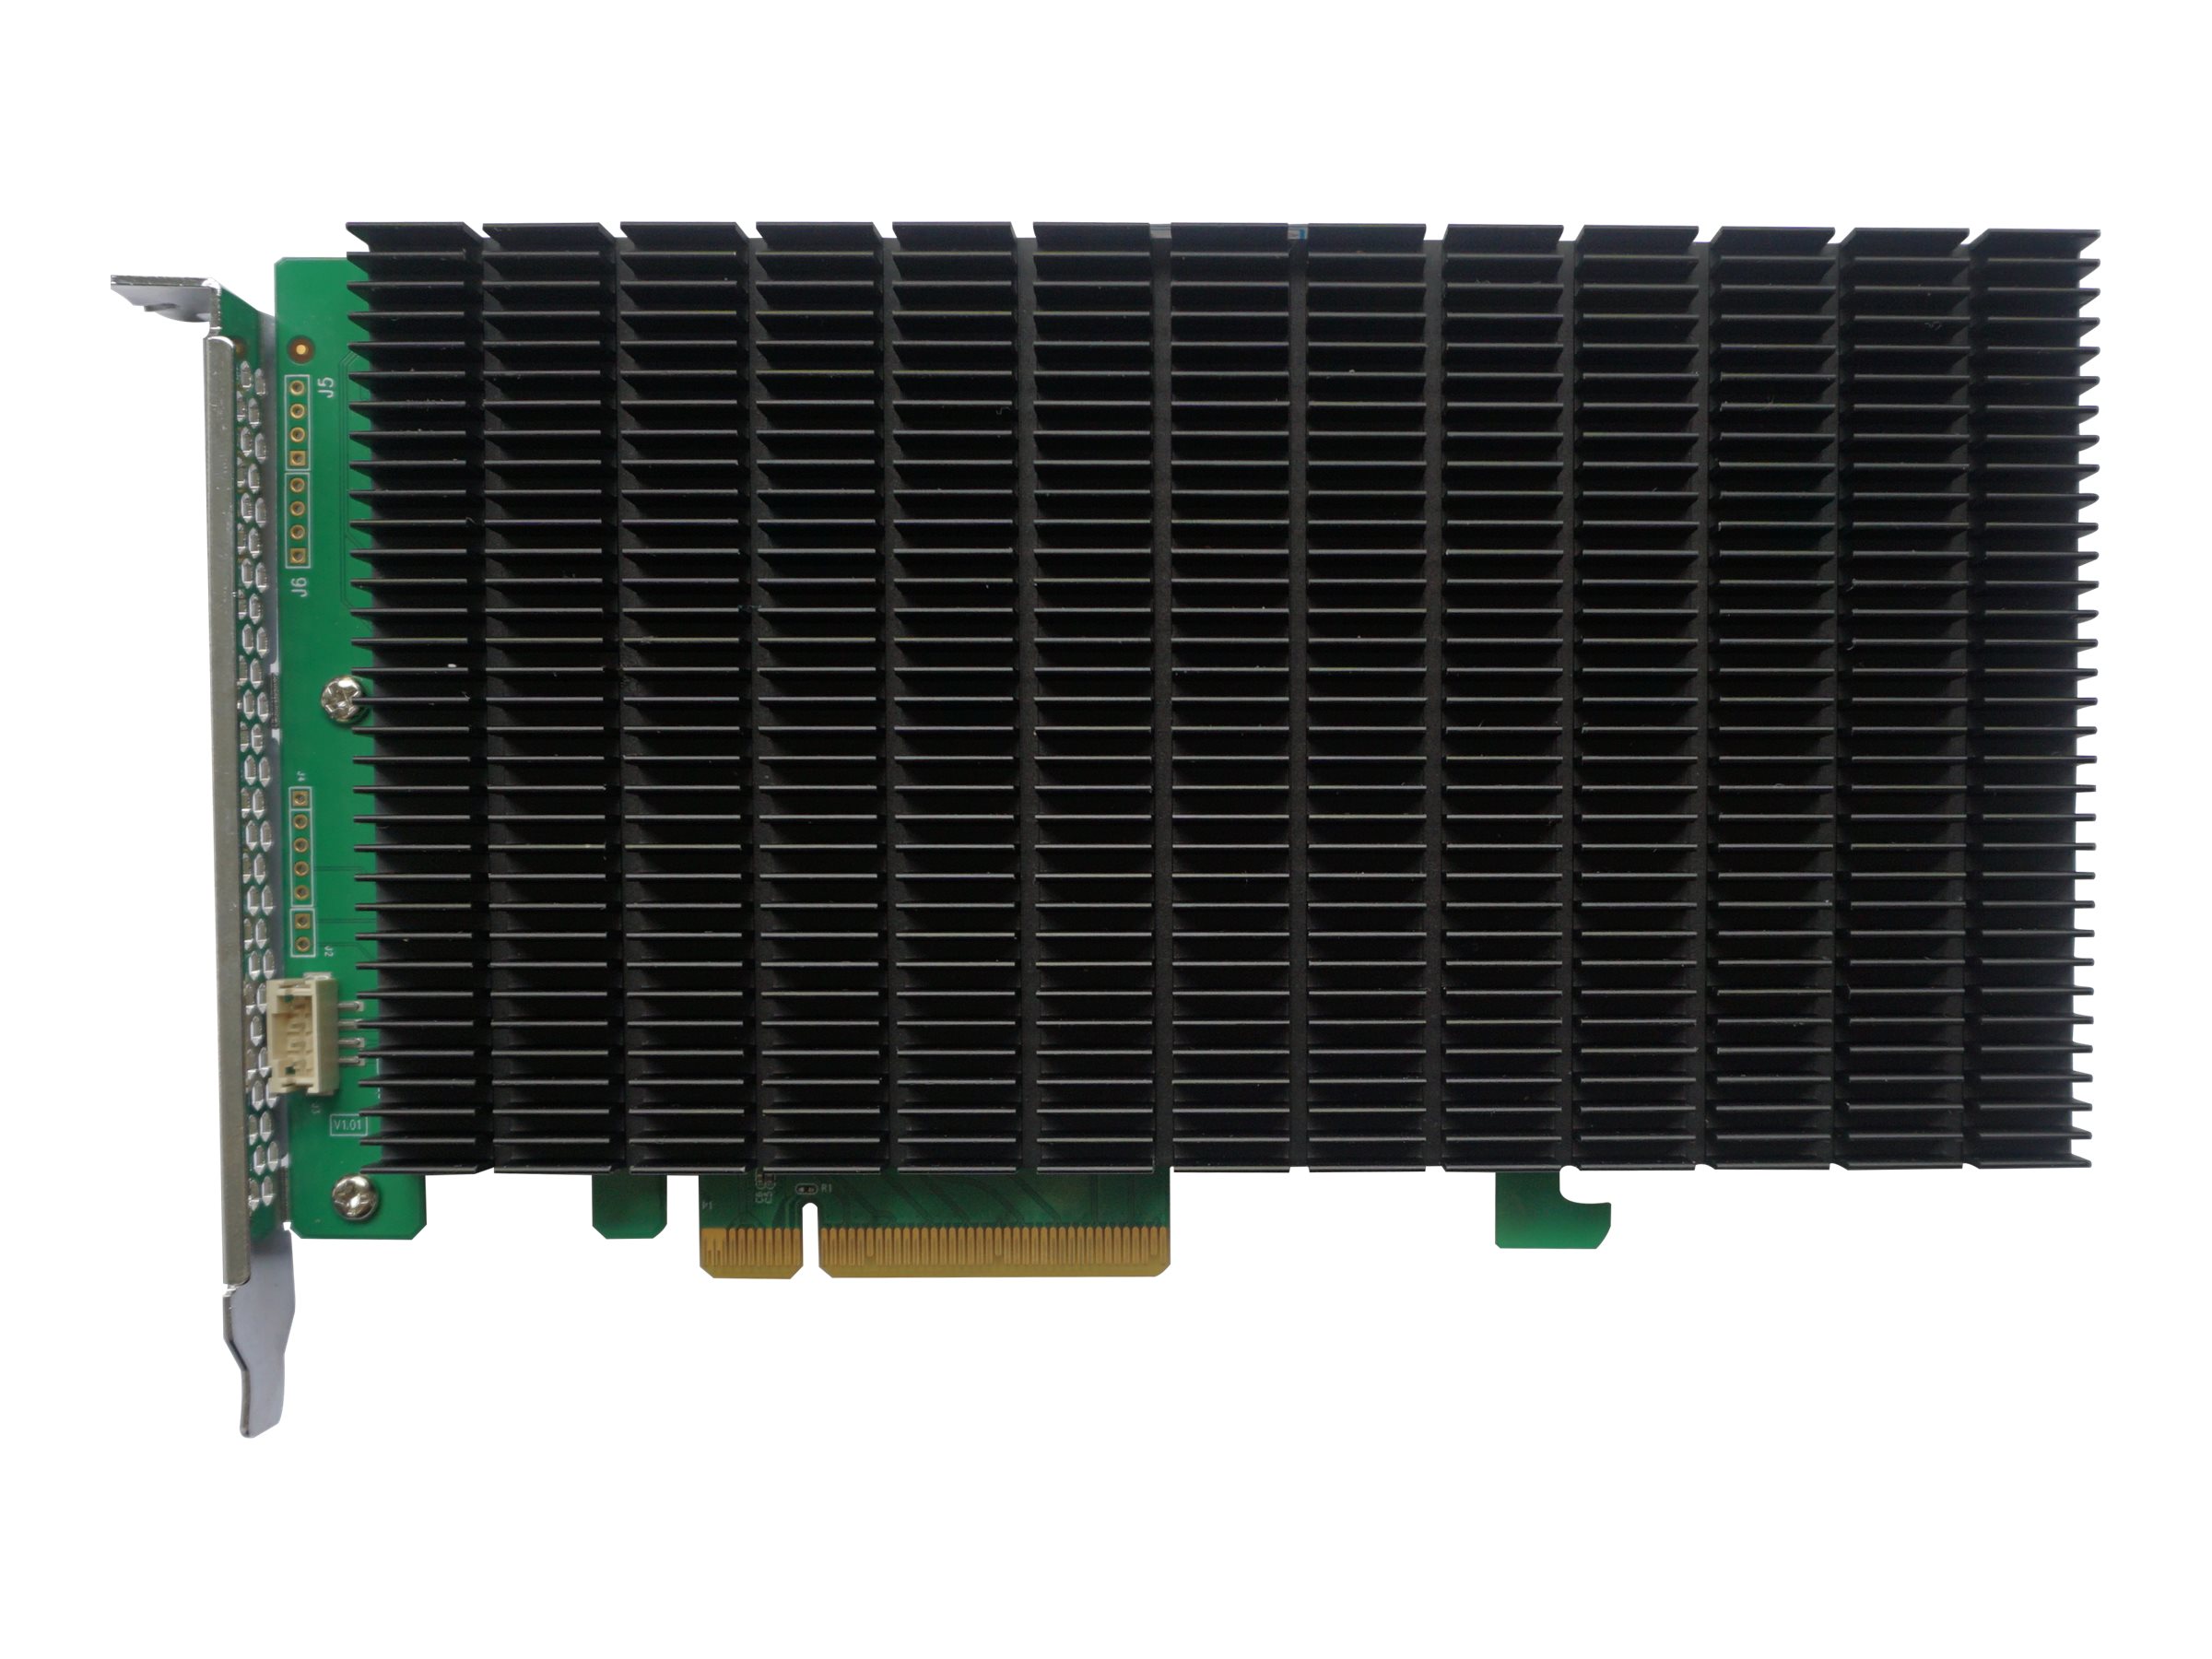 HighPoint SSD6204 - Speichercontroller (RAID) - M.2 - 4 Sender/Kanal - M.2 NVMe Card - RAID 0, 1, JBOD